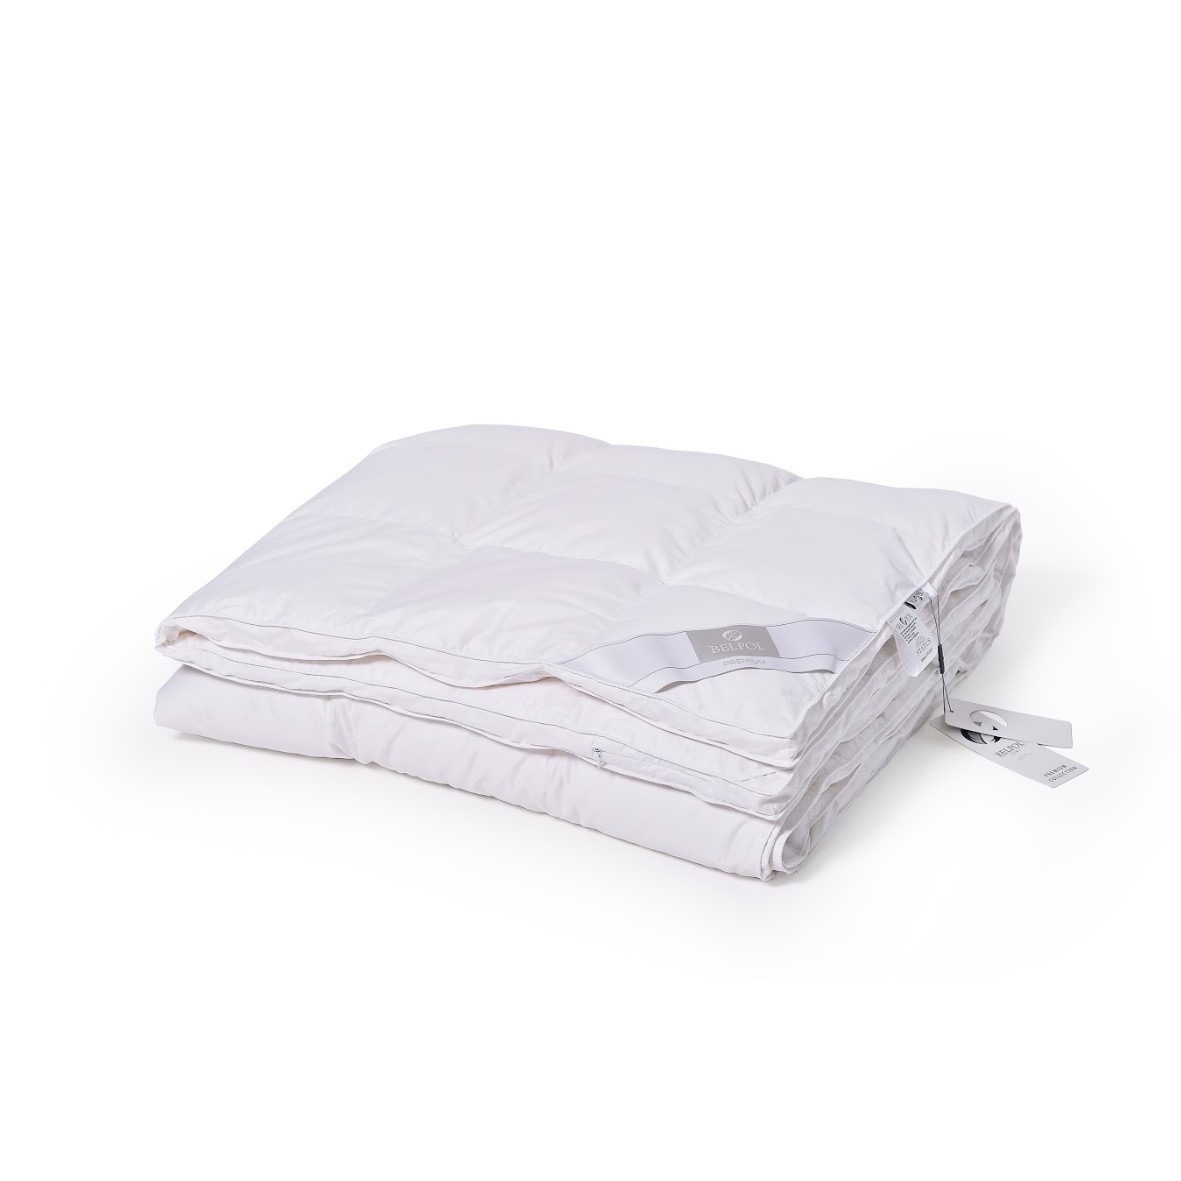 Одеяло Теплое Status (172х205 см), размер 172х205 см bp616361 Одеяло Теплое Status (172х205 см) - фото 1